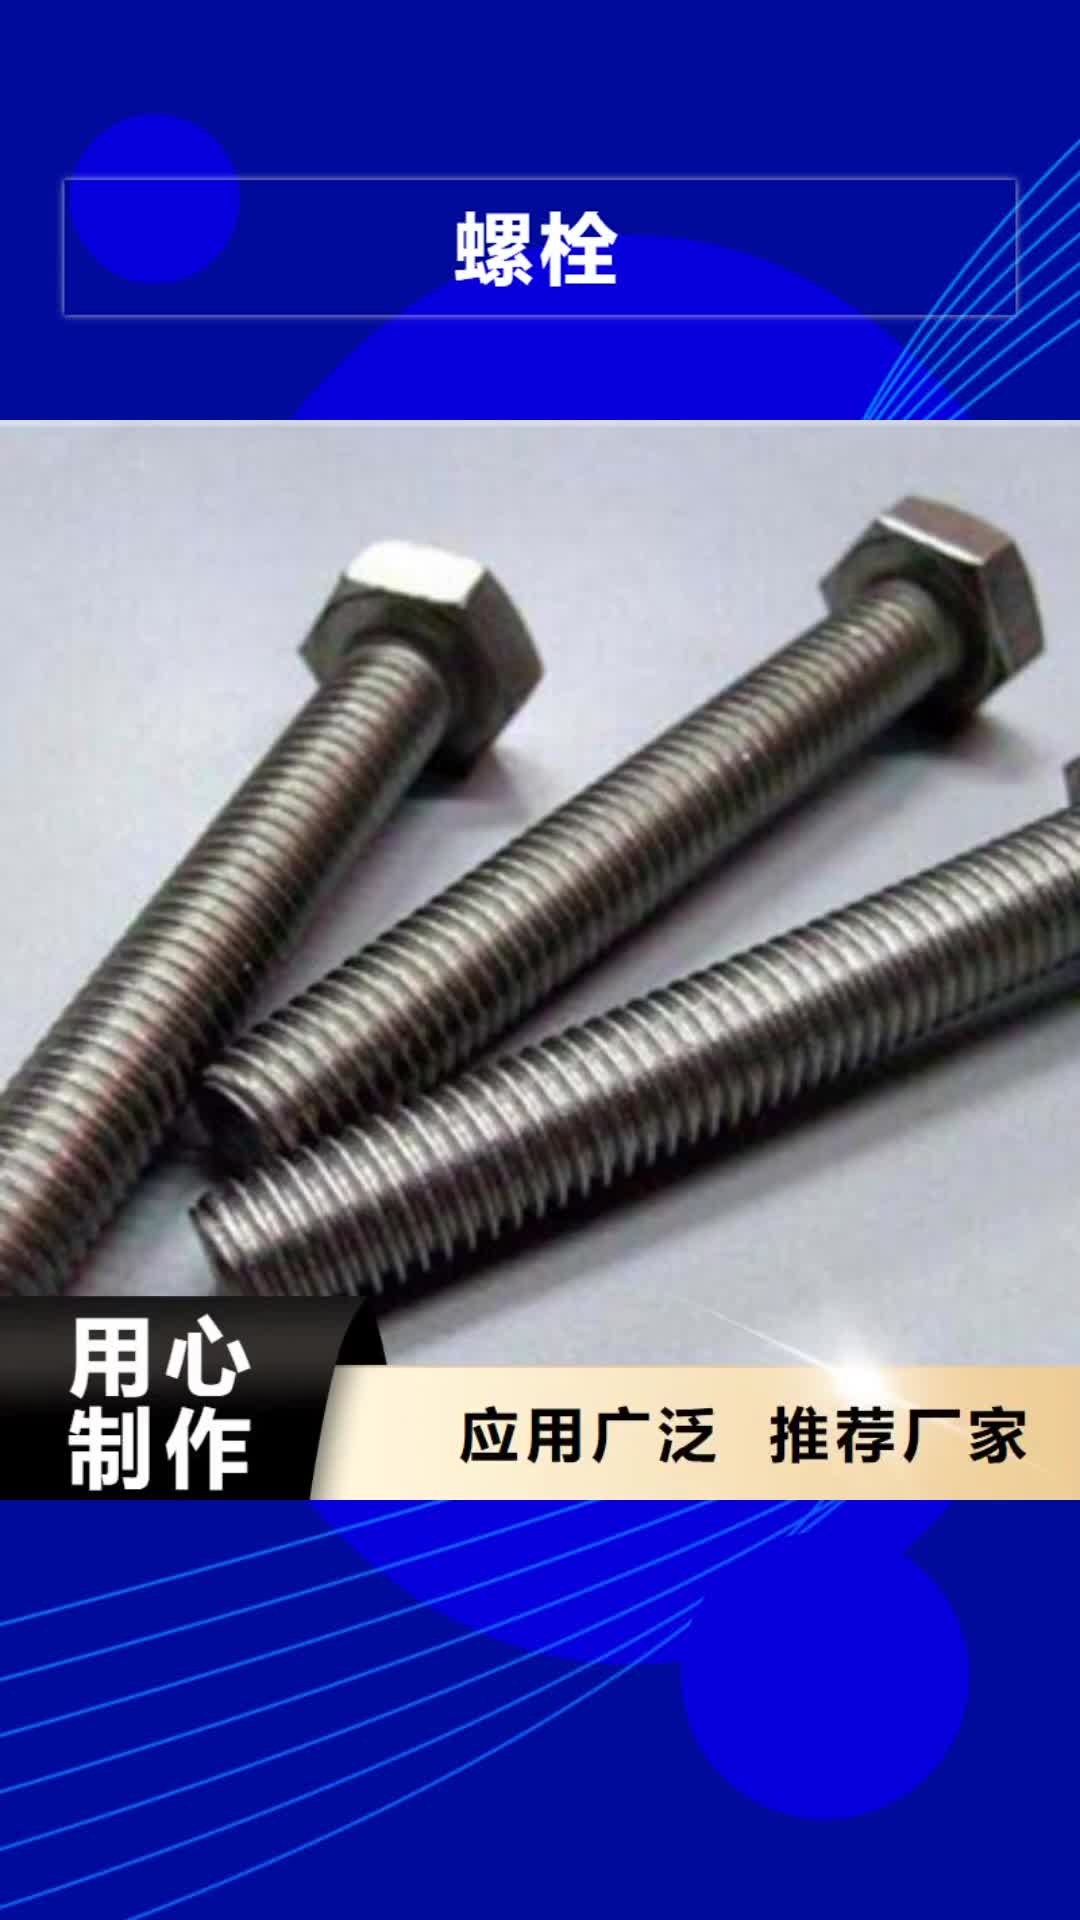 惠州【螺栓】,钢管优质材料厂家直销